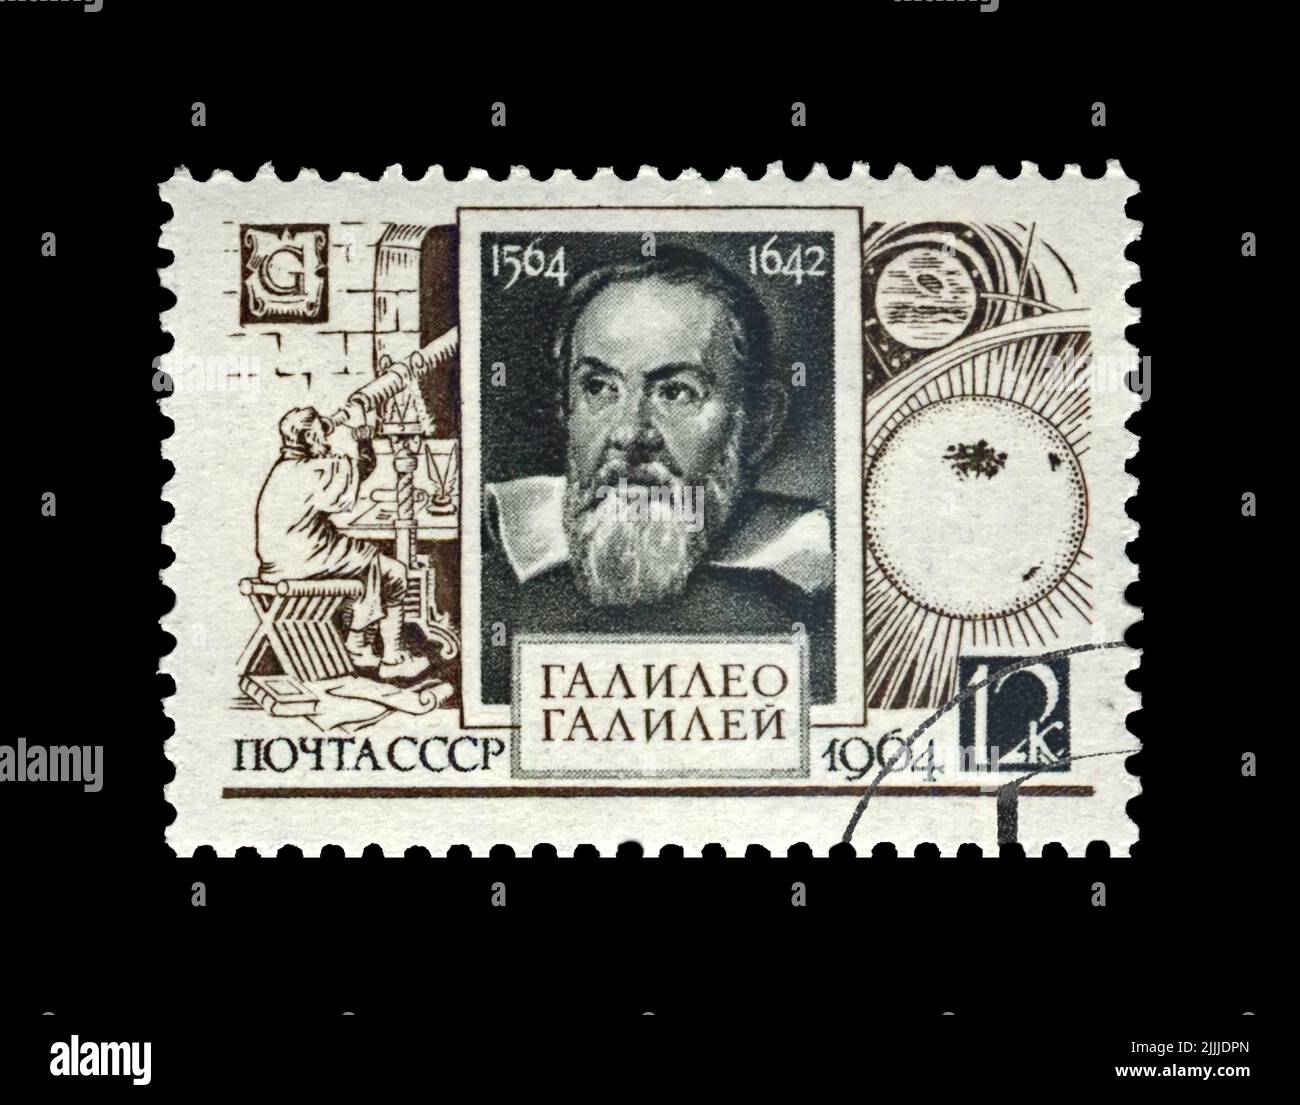 Galileo Galilei (1564-1642), famoso astronomo, fisico ed ingegnere italiano, circa 1964. Timbro cancellato stampato in URSS Foto Stock